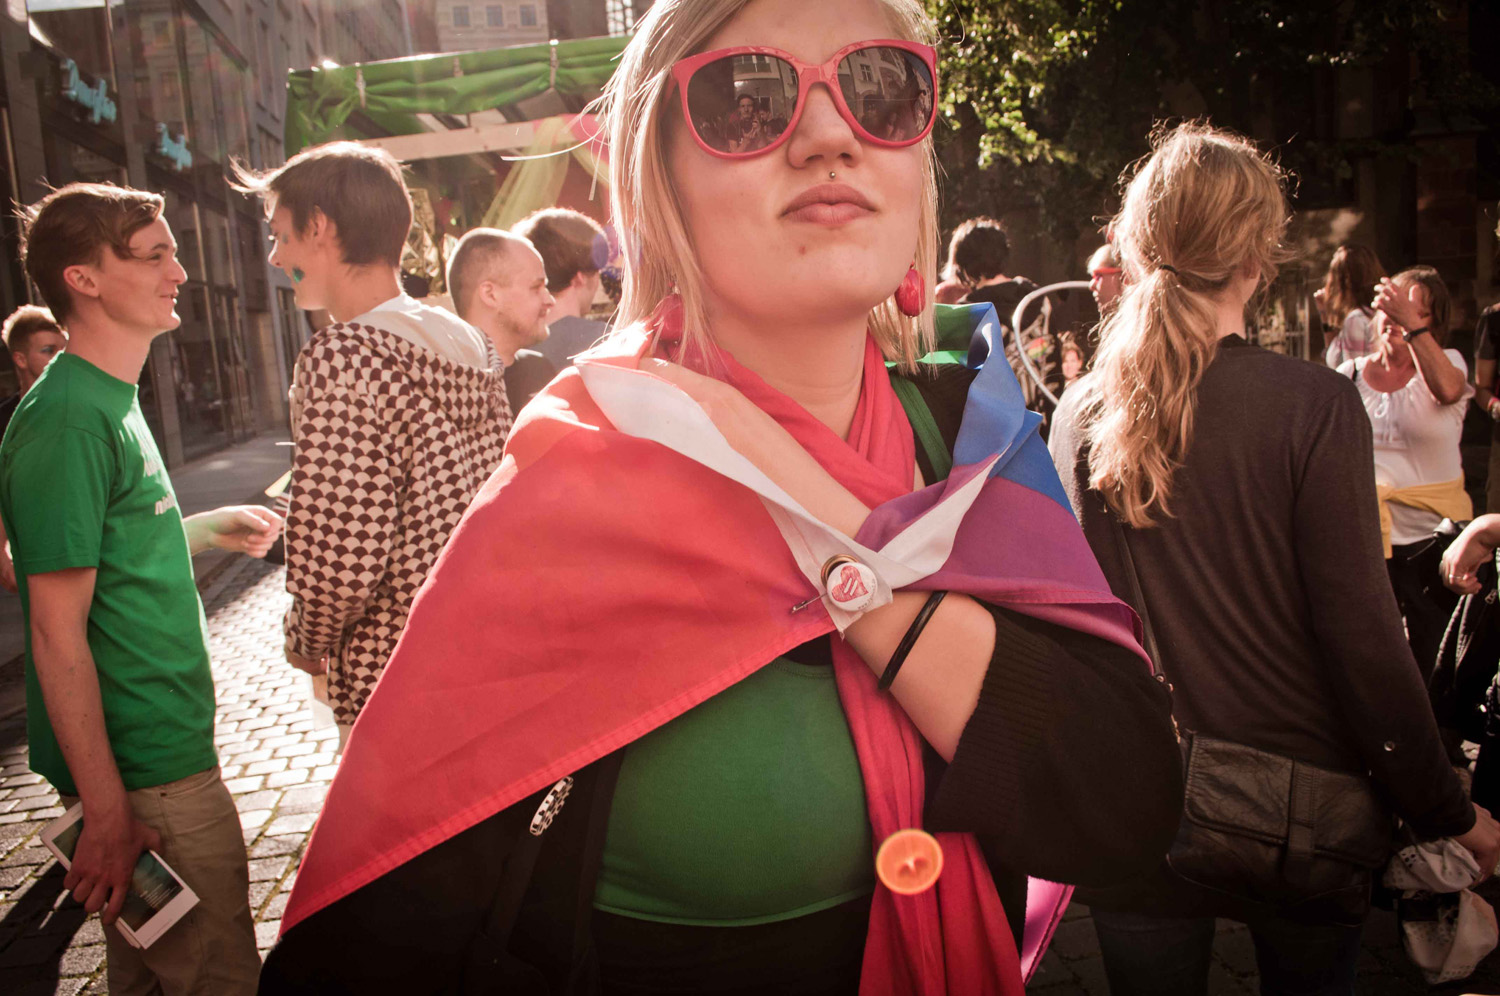   »Homophobie ist heilbar« | Bilder vom Christopher Street Day in Leipzig  